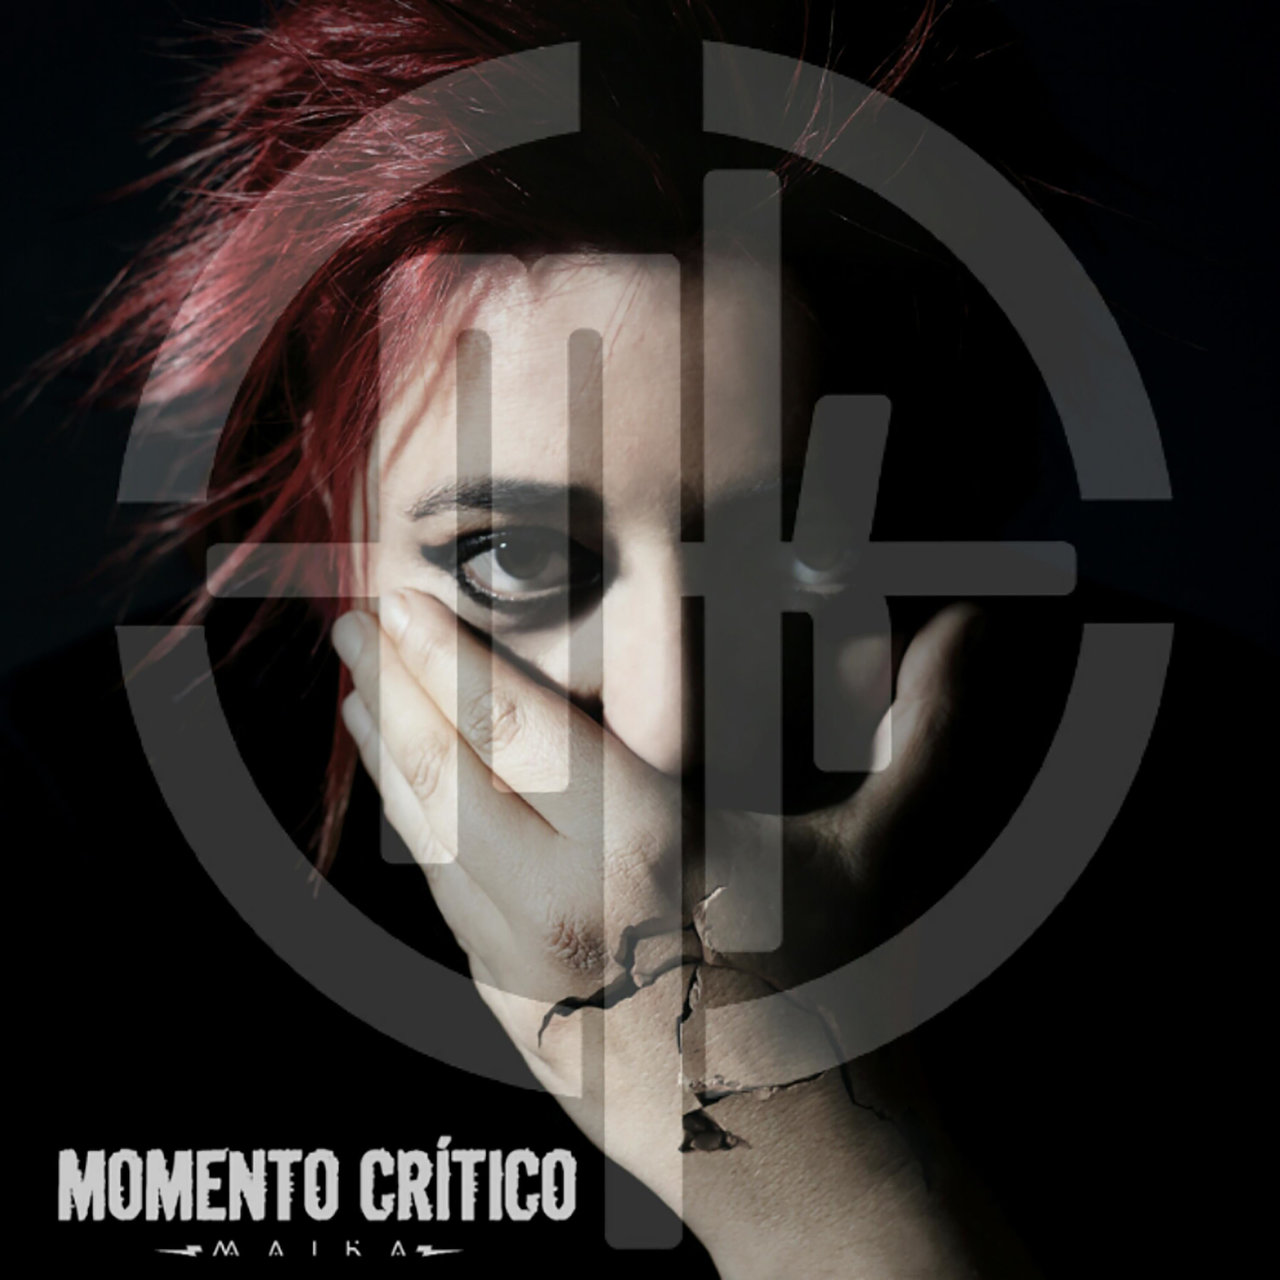 Maika Barbero Momento Critico cover artwork